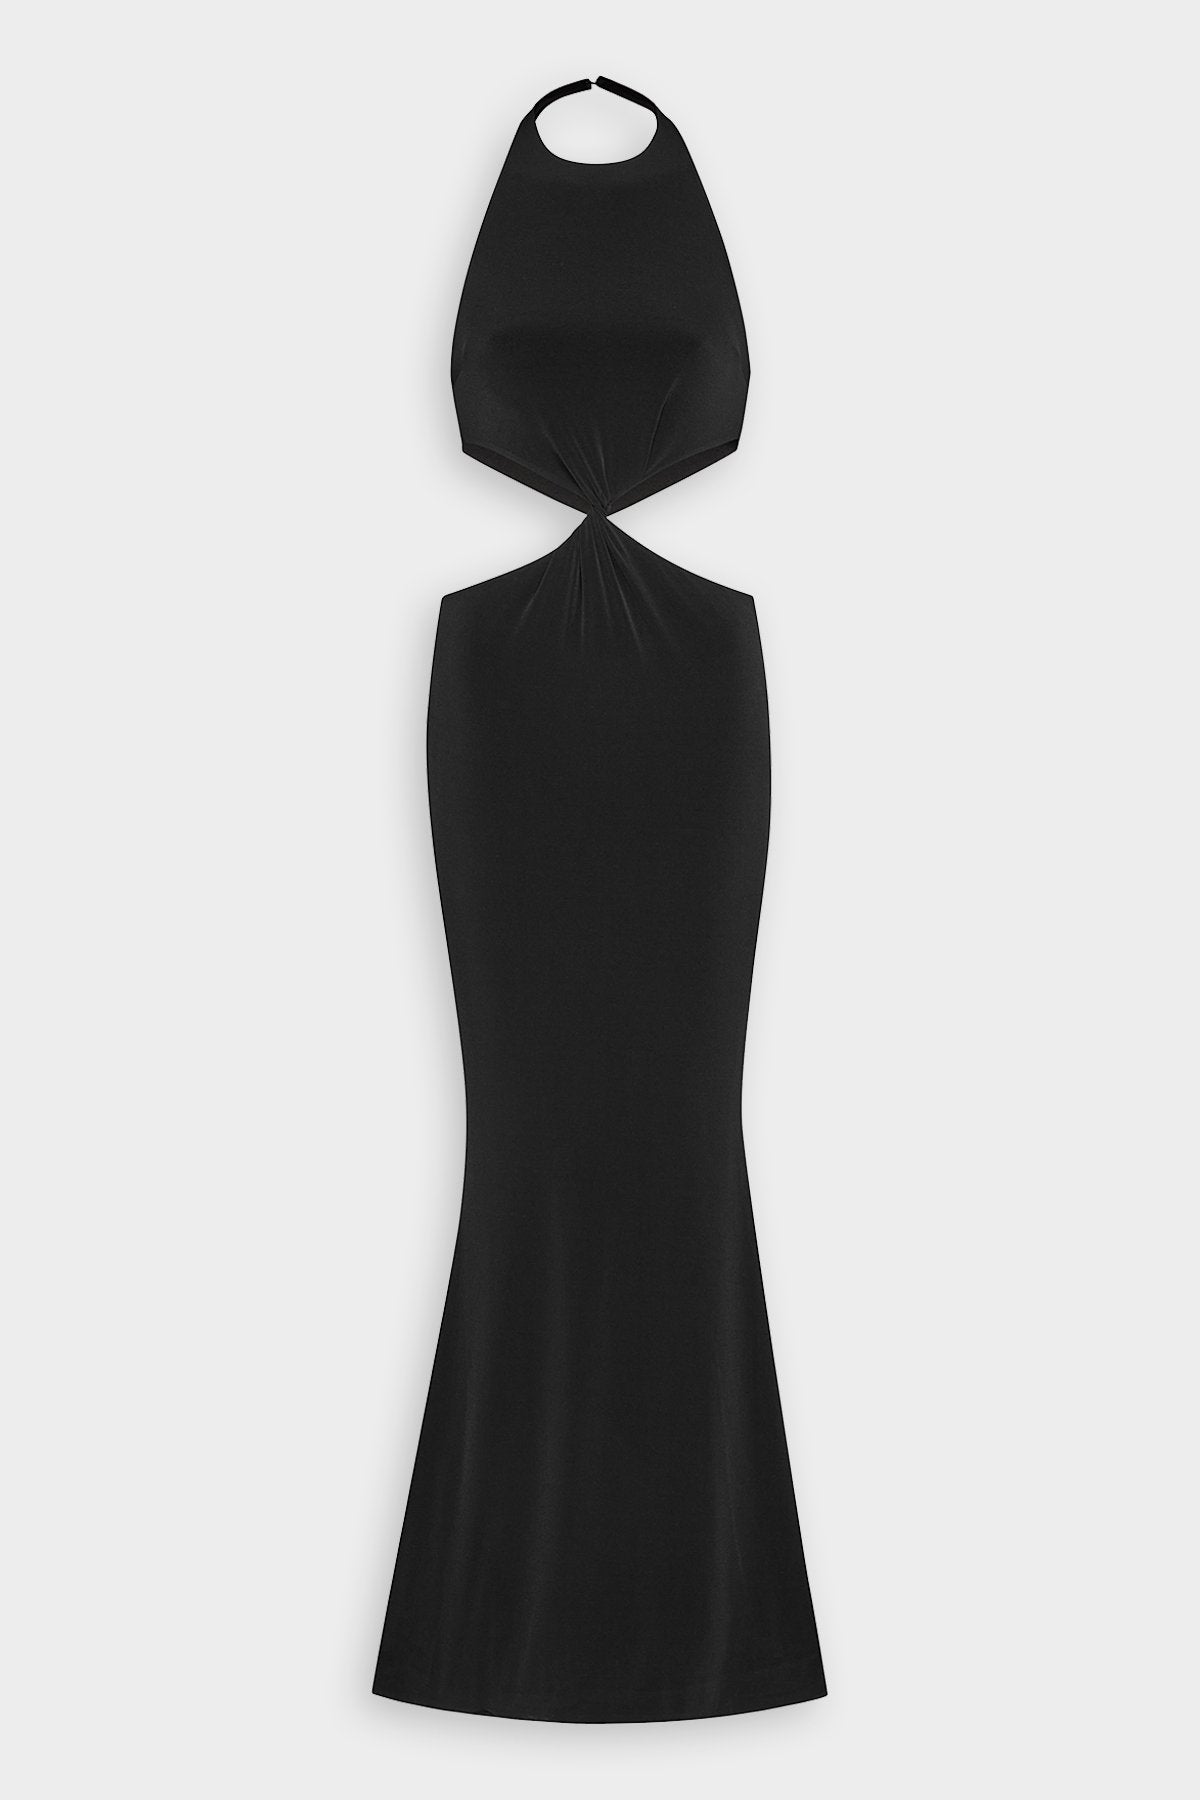 Raven Dress in Black - shop-olivia.com